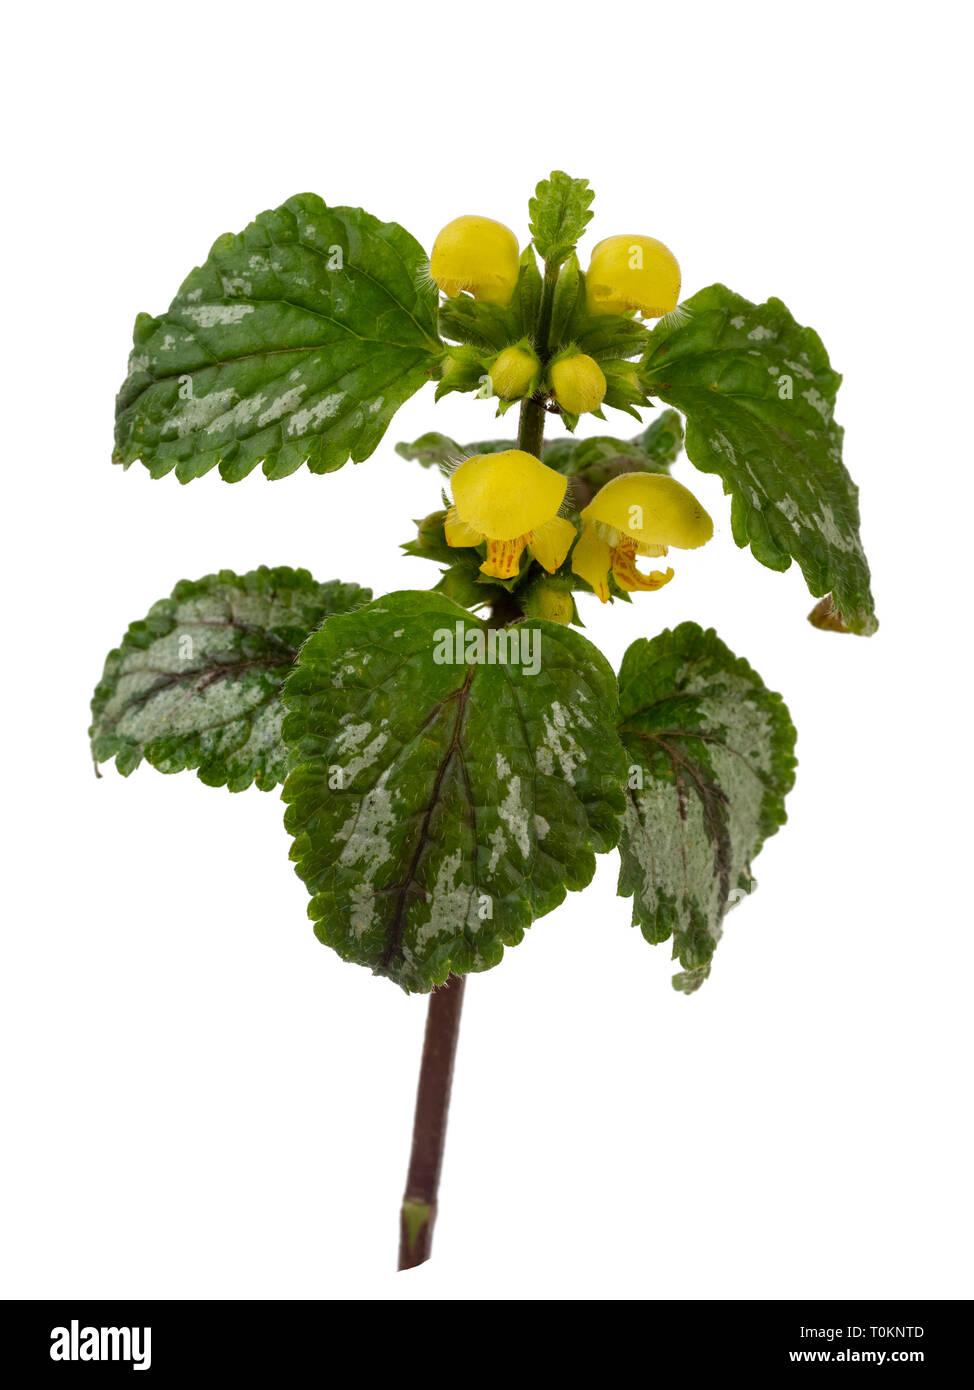 Il fogliame variegato e molla gialla fiori del giardino invasiva impianto, Lamiastrum galeobdolon subsp argentatum, isolato su sfondo bianco Foto Stock